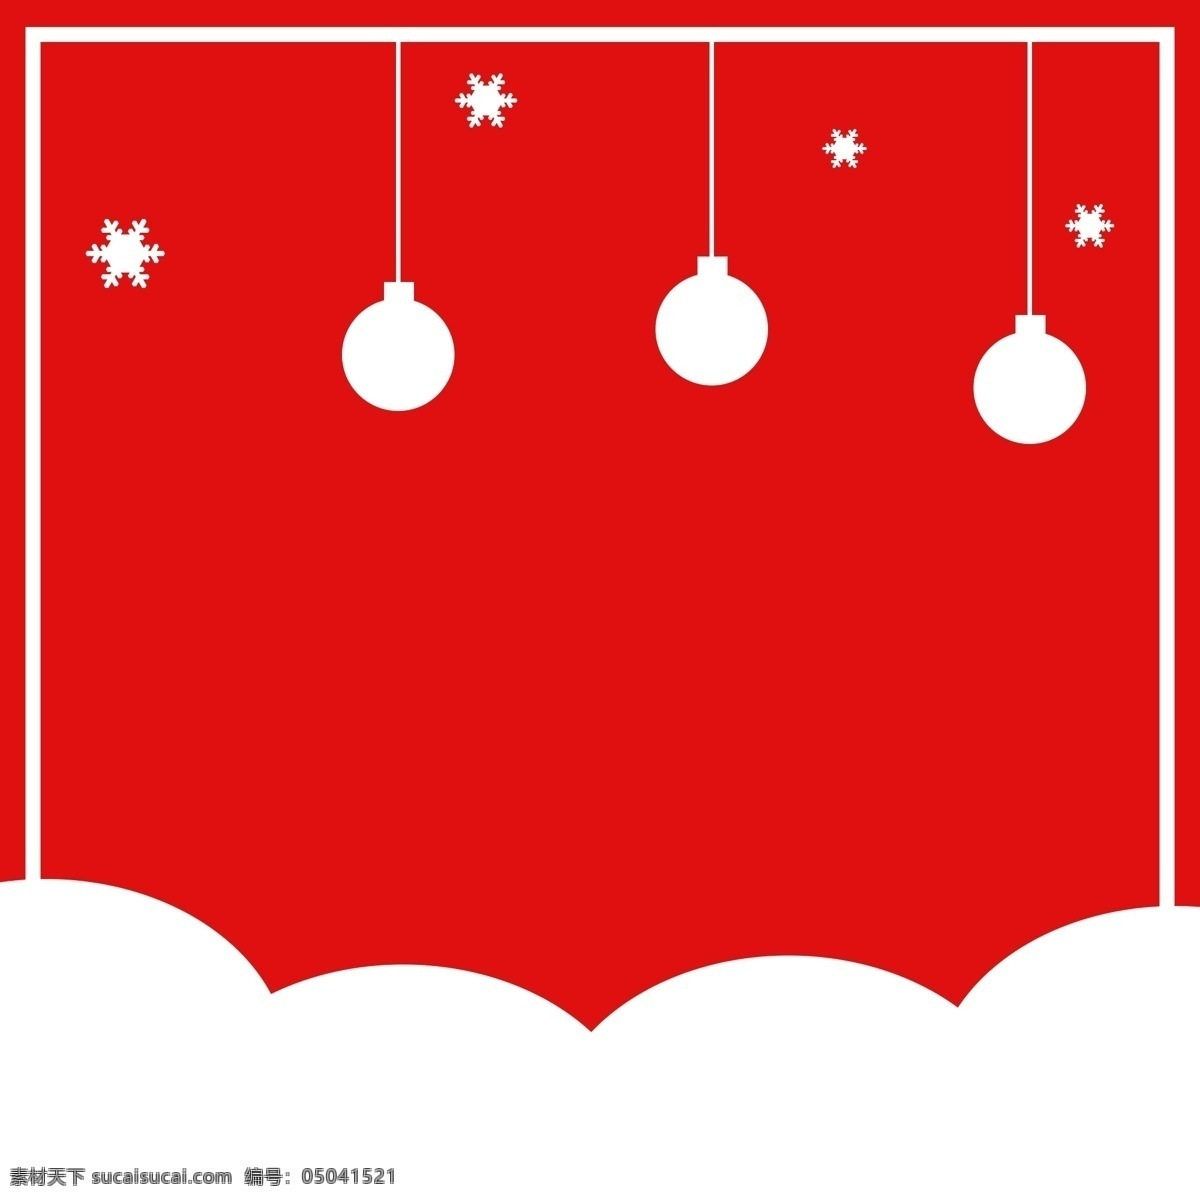 简约 红色 圣诞 主 图 背景 白边 雪花 白色球 圣诞背景 红色背景 主图背景 直通车